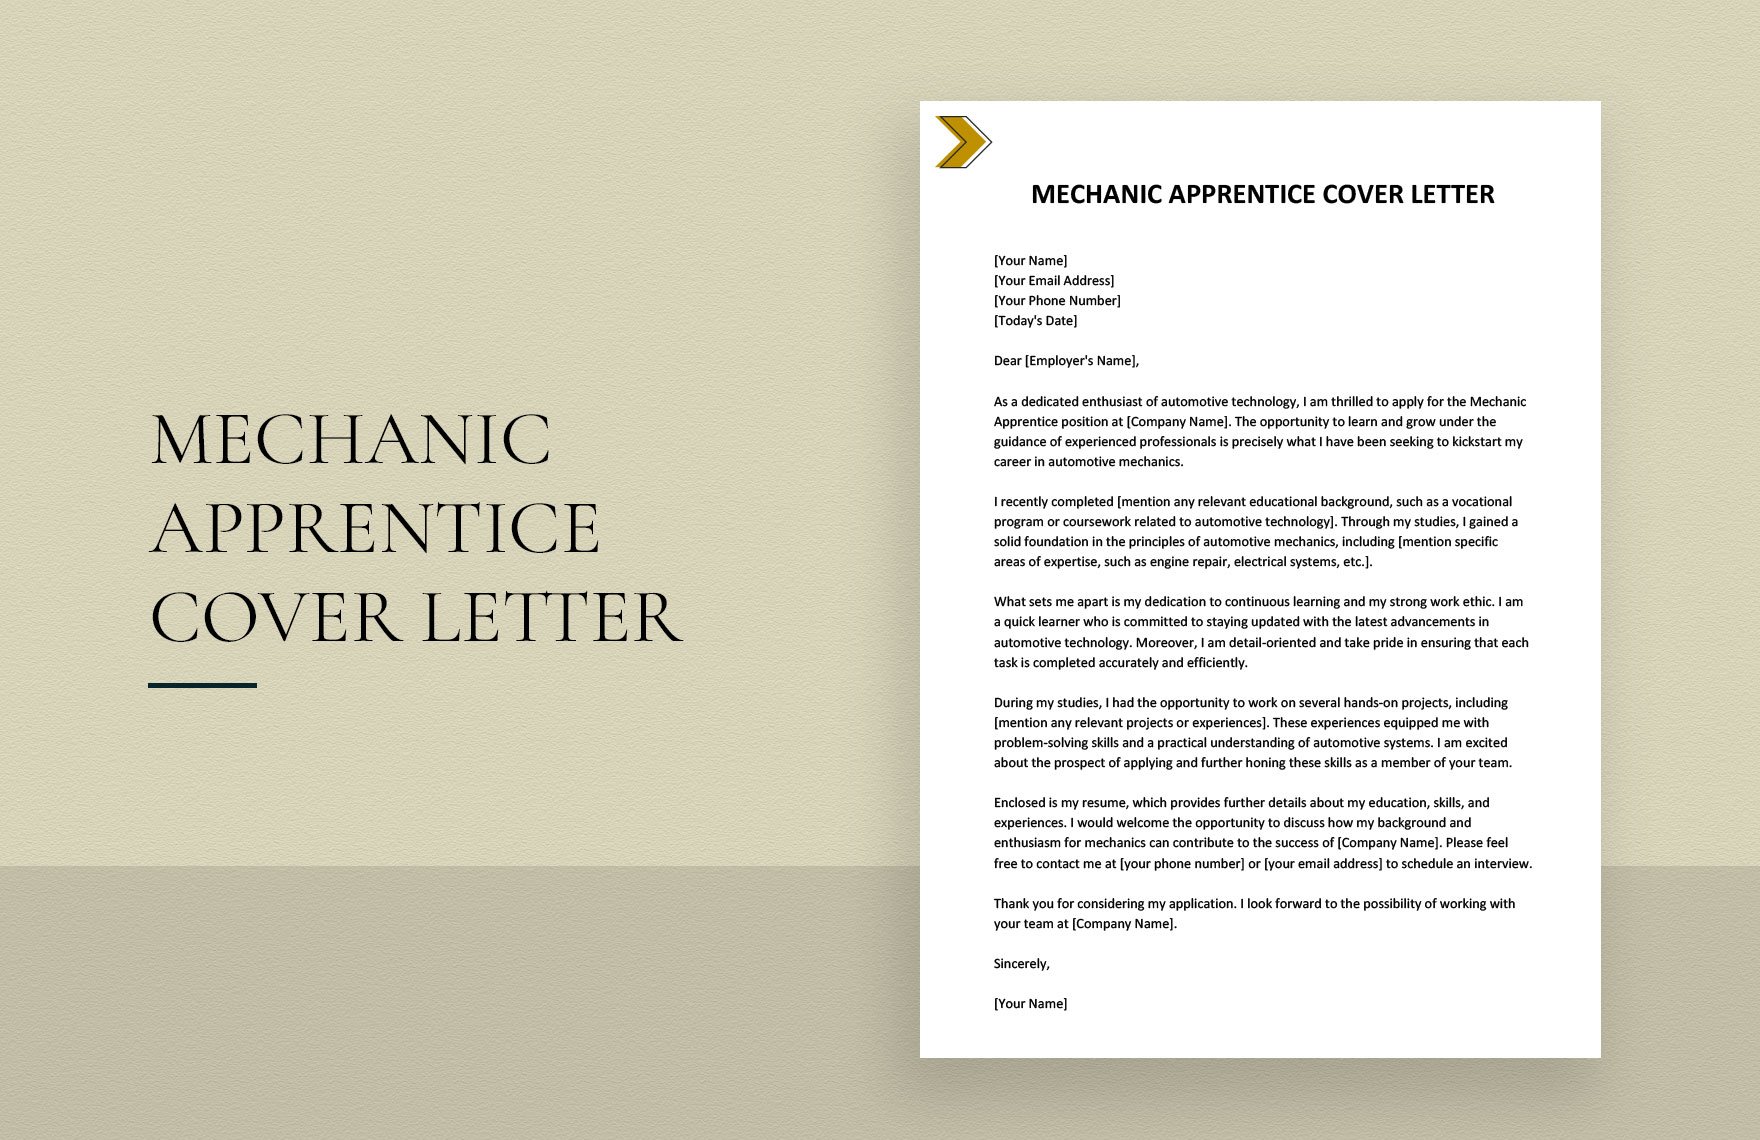 Mechanic Apprentice Cover Letter